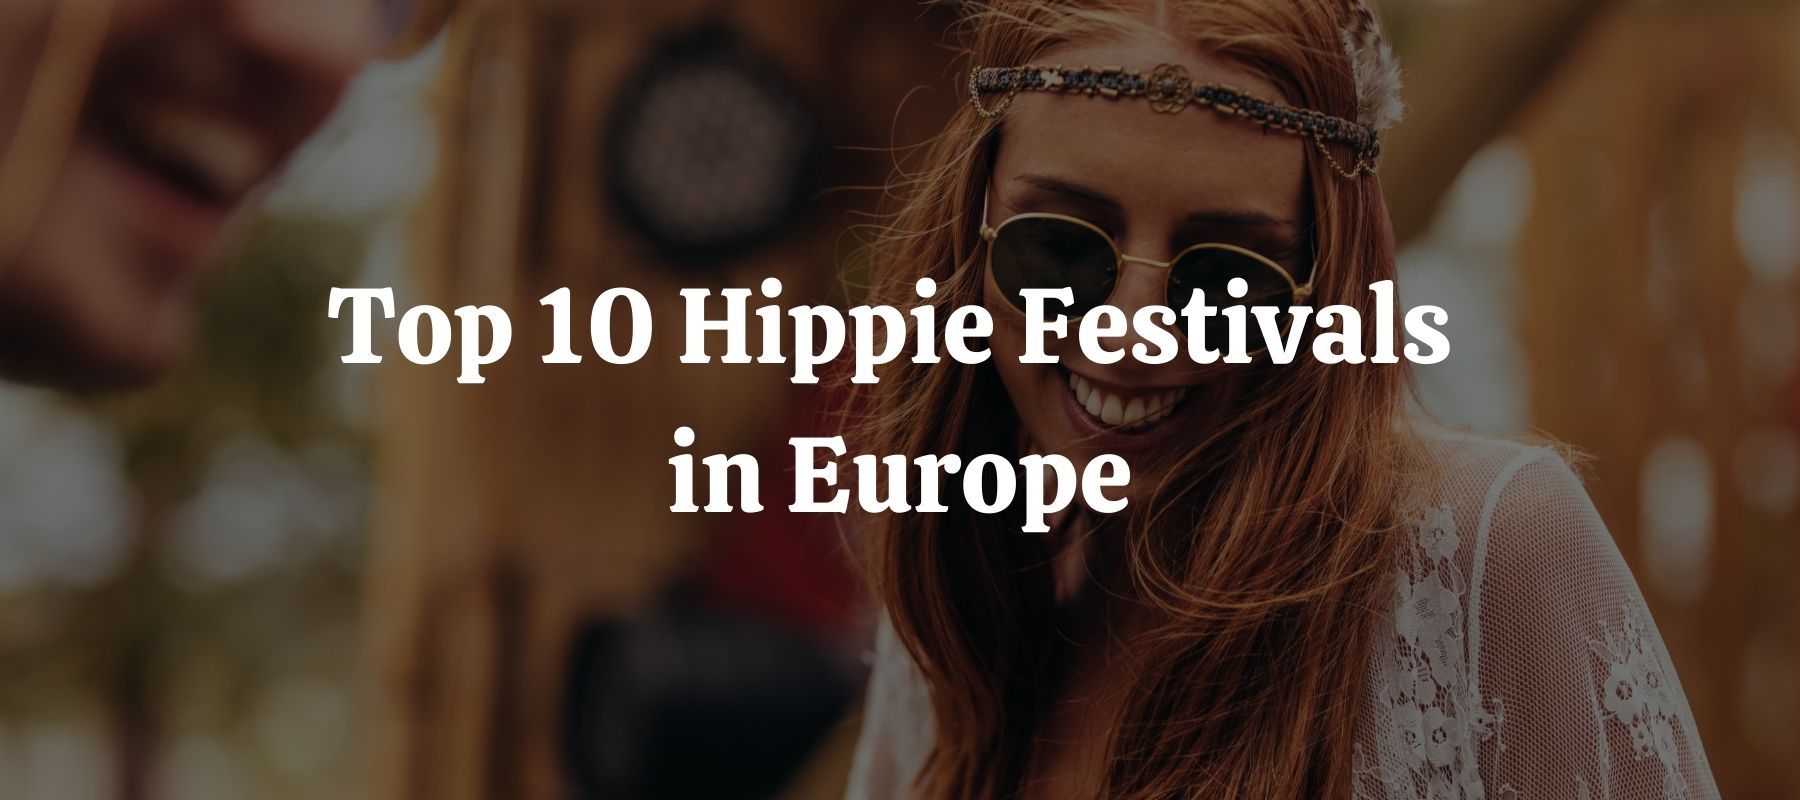 Top 10 Hippie Festivals in Europe